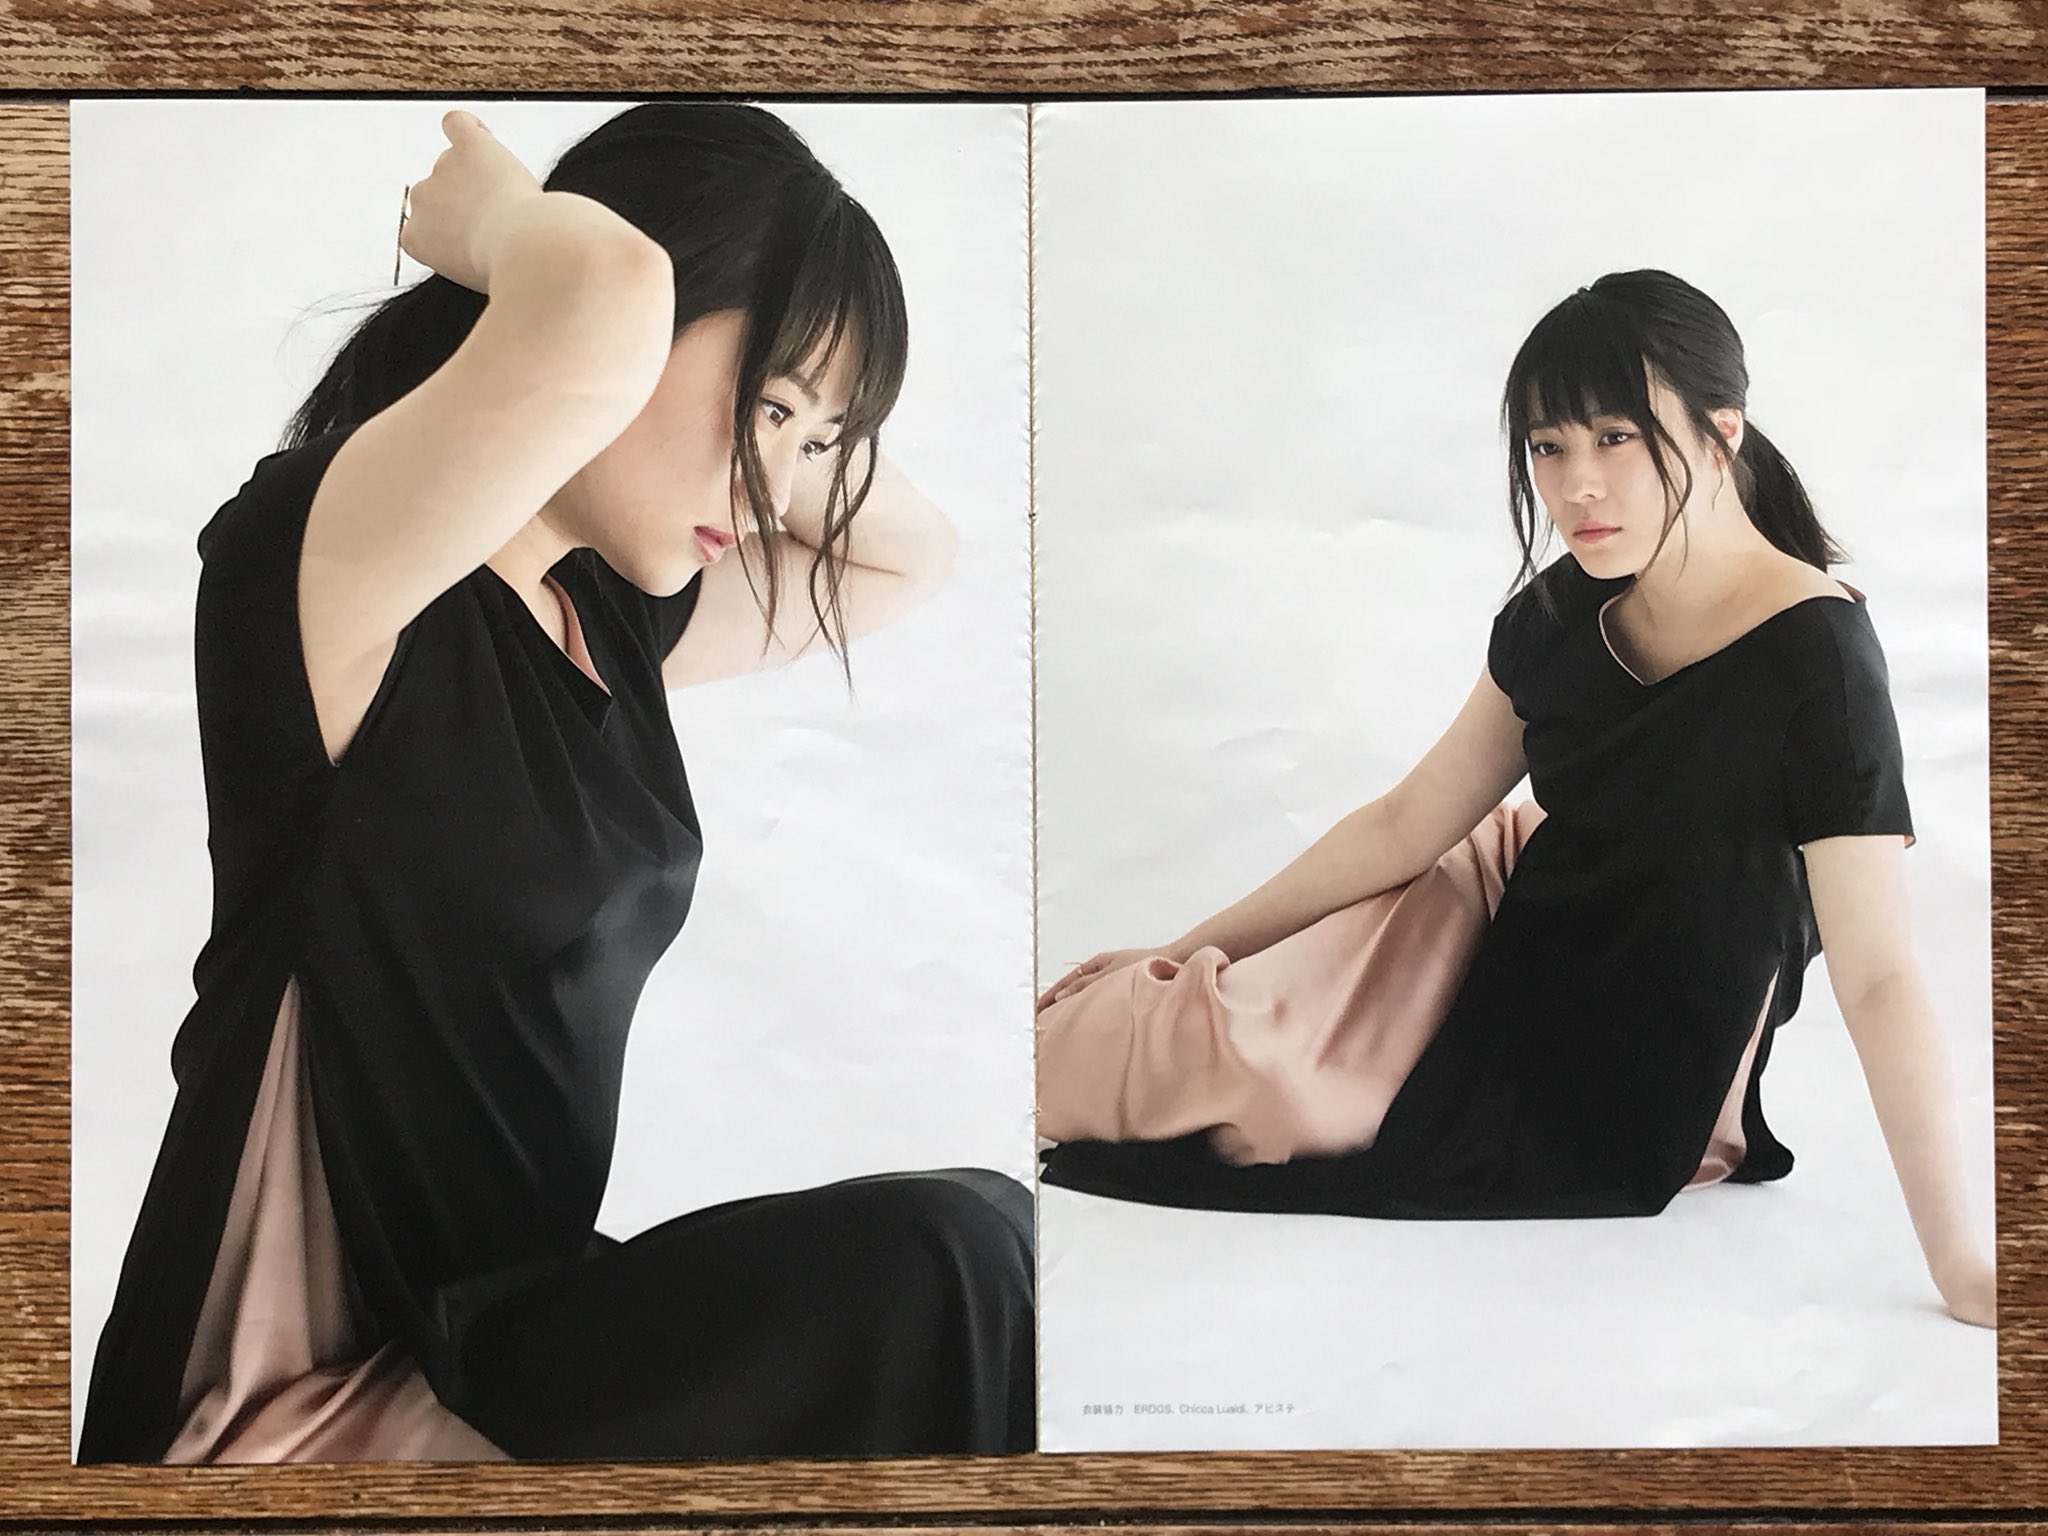 Meisa Fujishiro 週刊文春さん最新号にて 北乃きいさん撮影 17 歳と2冊の写真集を担当して以来の再会 大人になった彼女の大らかさのある色気が残せました 褒め言葉として 昭和女優の存在があります 透明感も素敵でした T Co Mzd5r3pkki